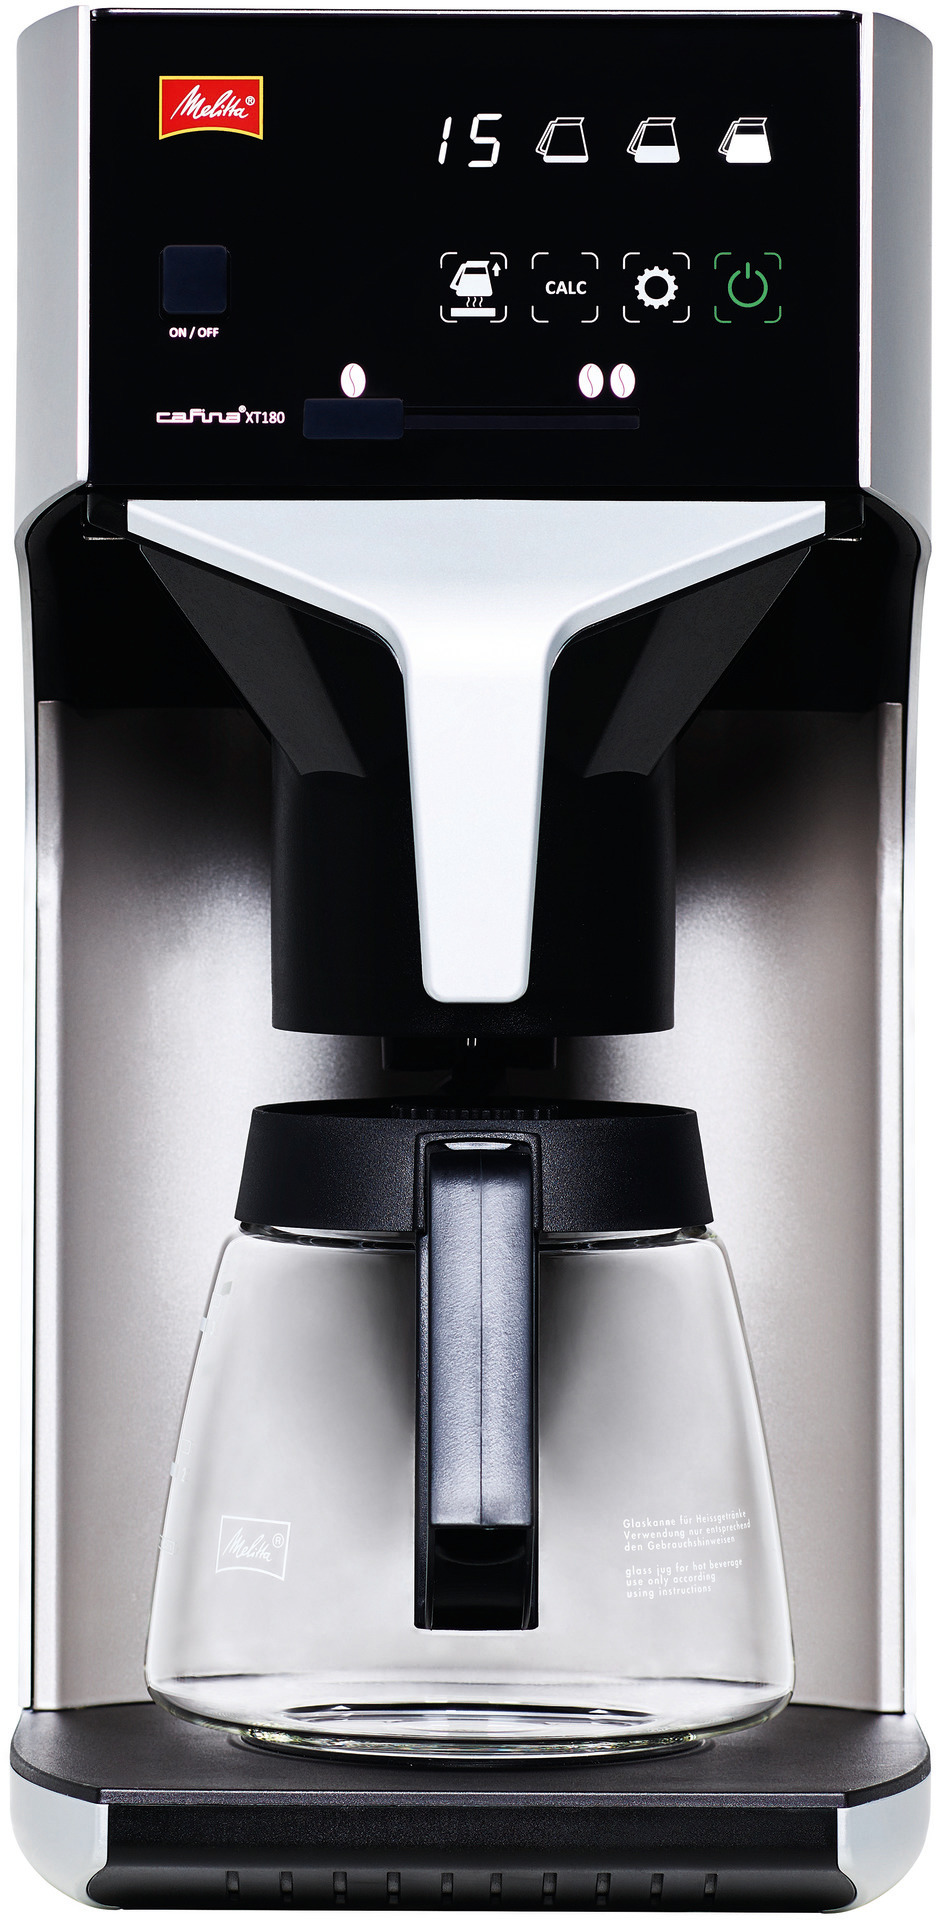 Filterkaffeemaschine 1,80 l mit Glaskanne / ohne Wasseranschluss / 230 V